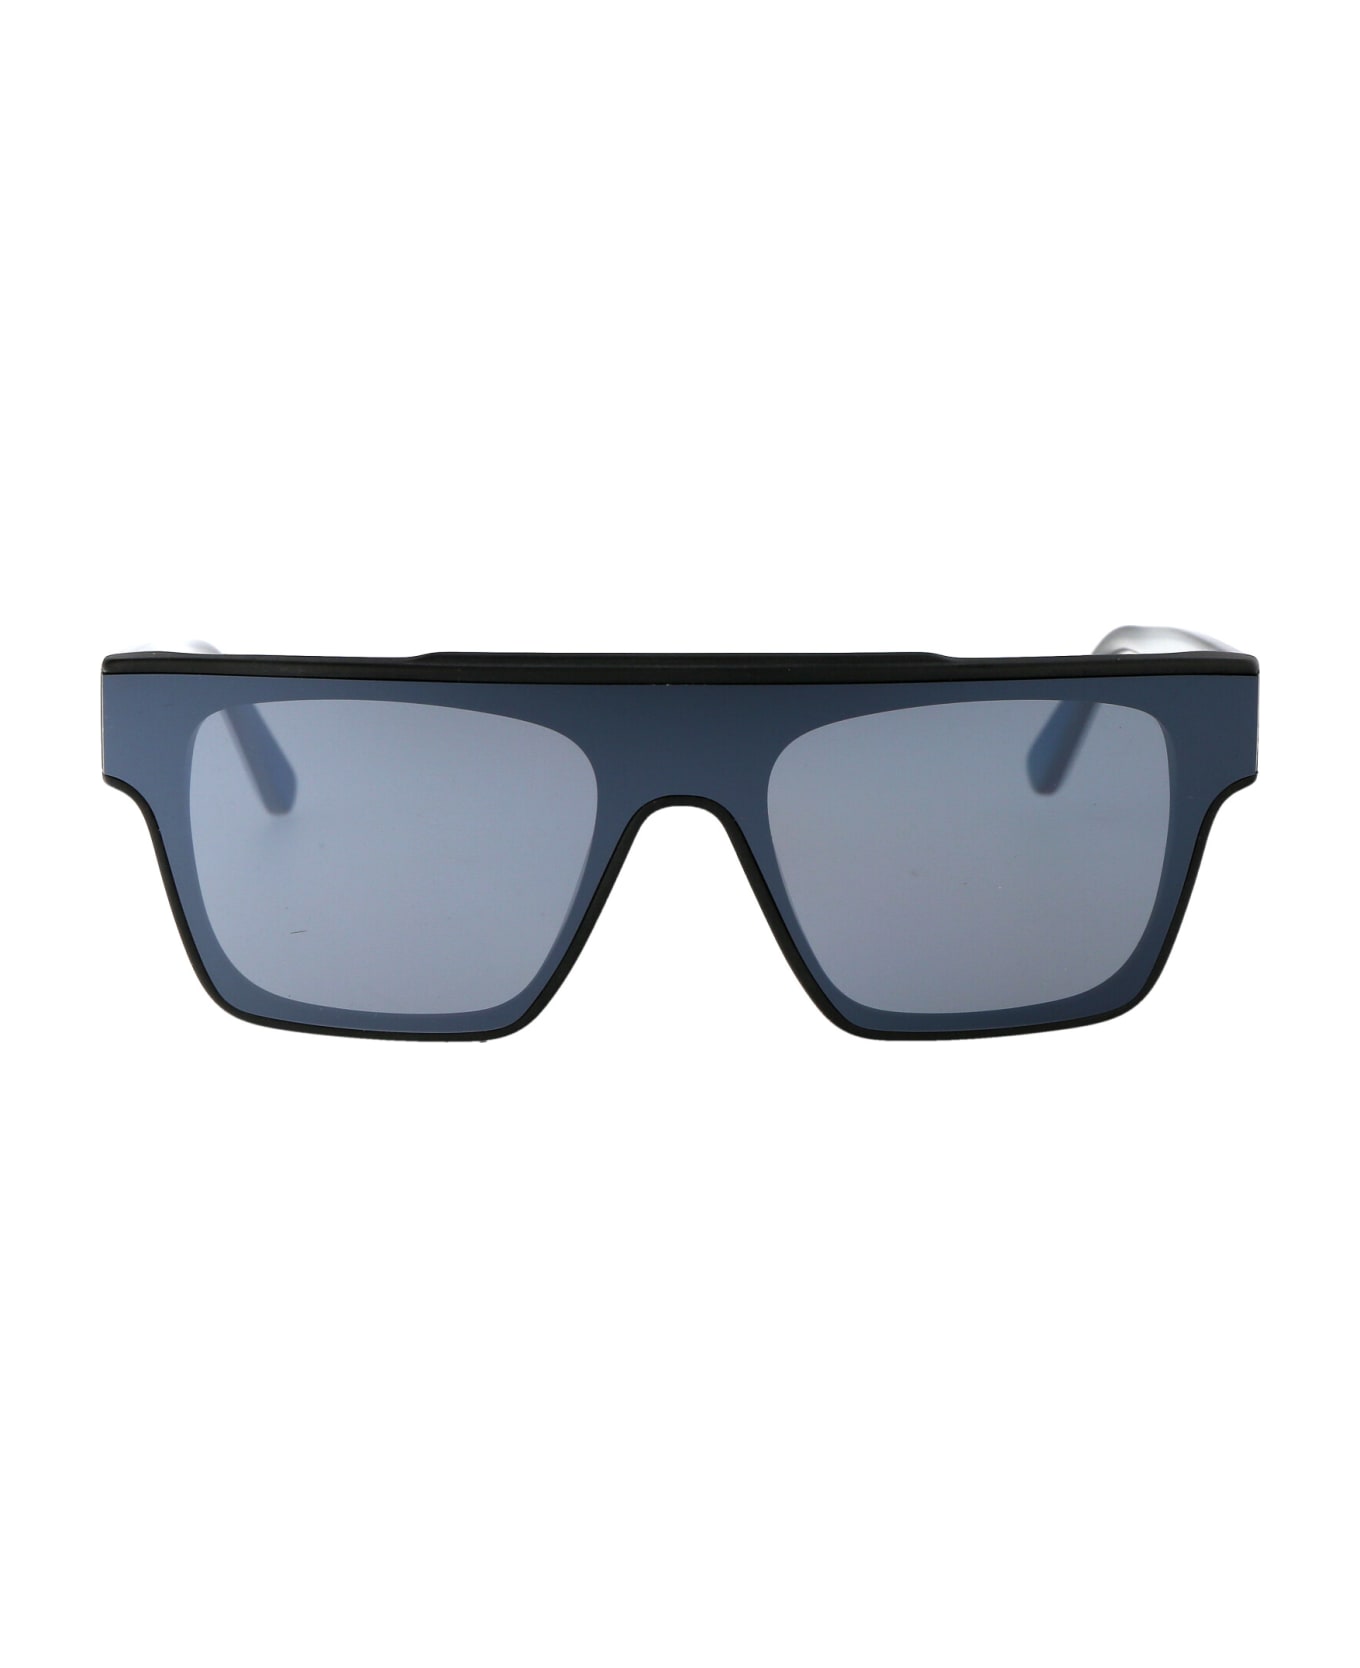 Karl Lagerfeld Kl6090s Sunglasses - 002 MATTE BLACK サングラス